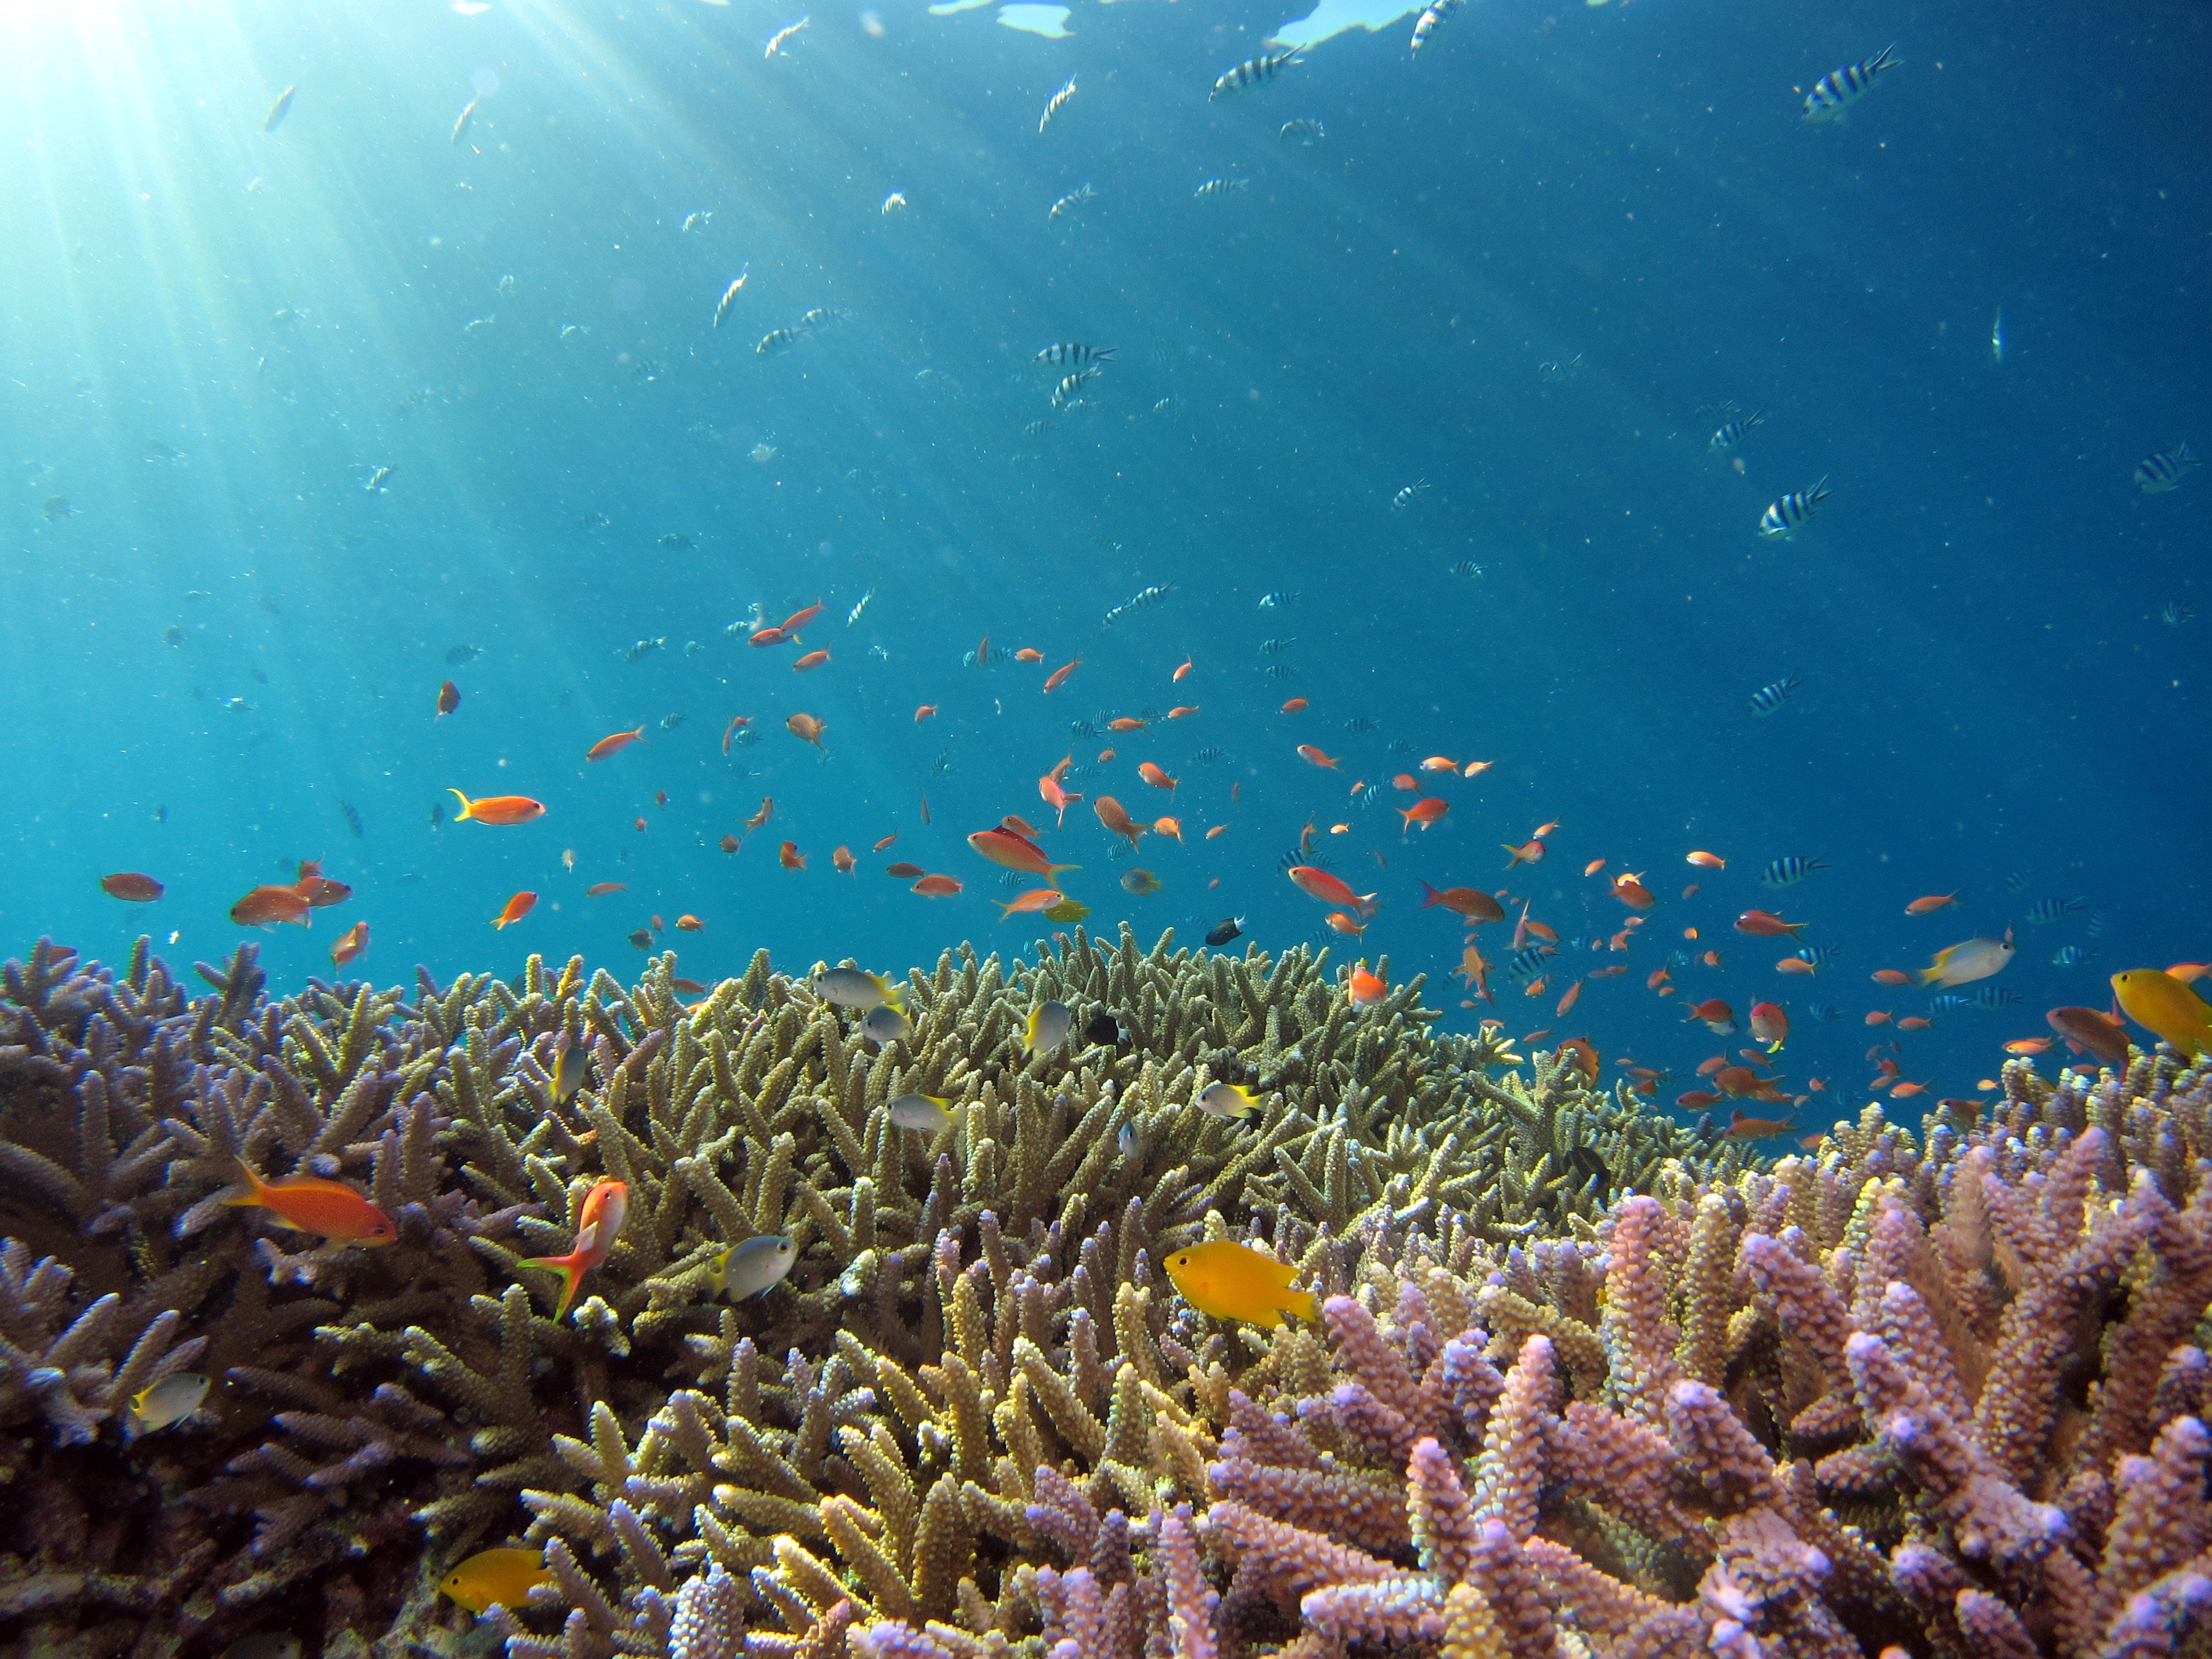 스노클링으로 바다 열대어와 산호초 등이 보이는 모습